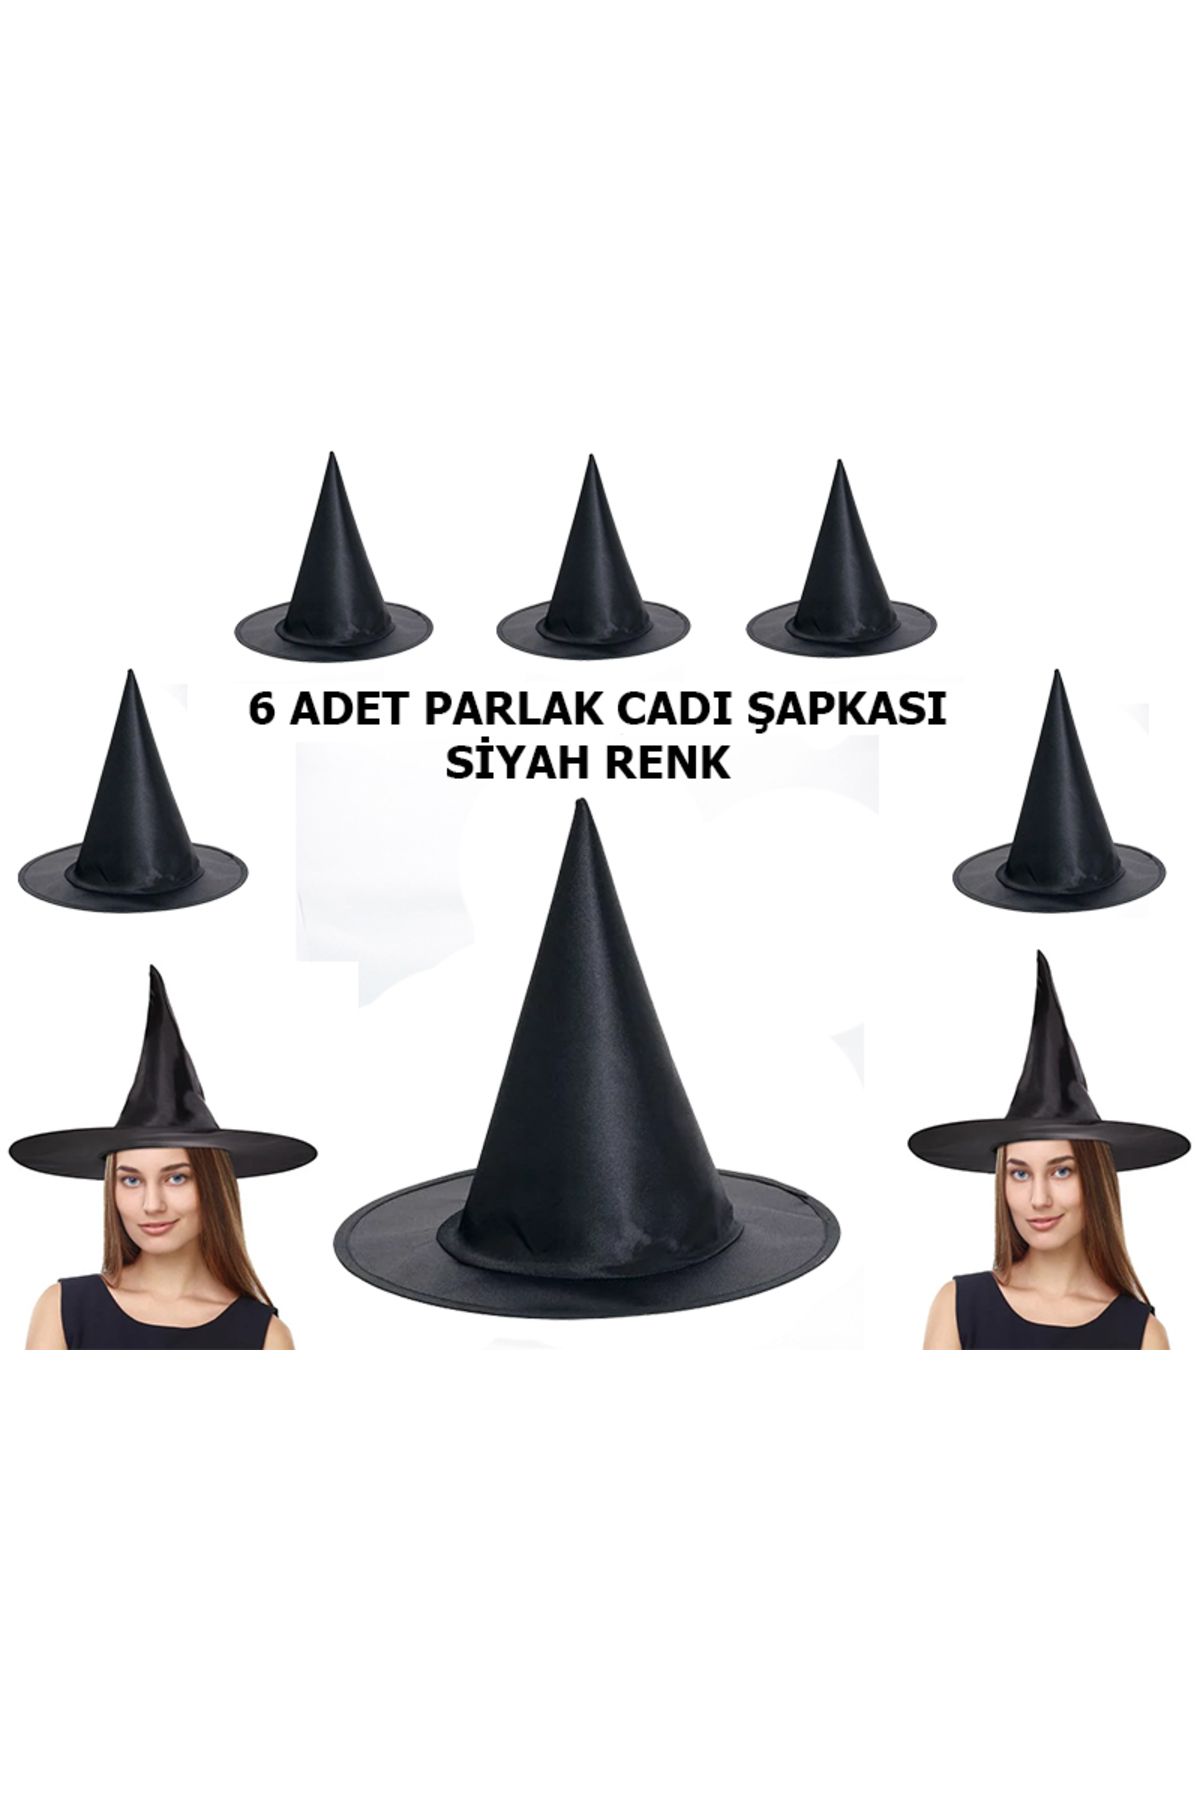 Go İthalat Halloween Siyah Renk Parlak Dralon Cadı Şapkası Yetişkin ve Çocuk Uyumlu 6 Adet (3877)